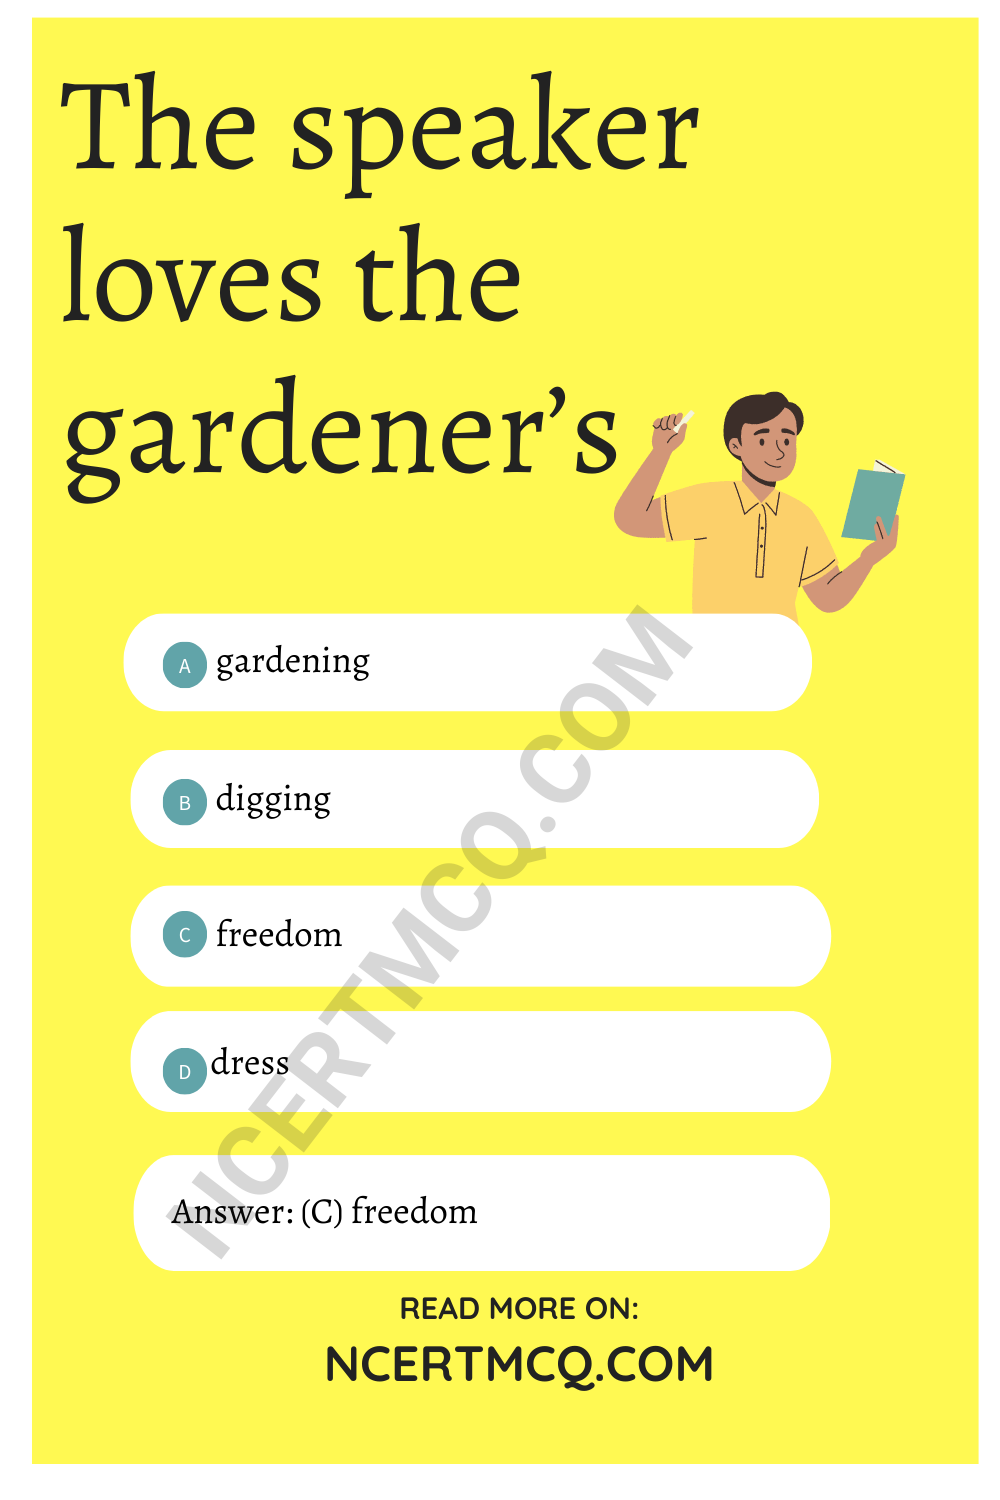 The speaker loves the gardener’s